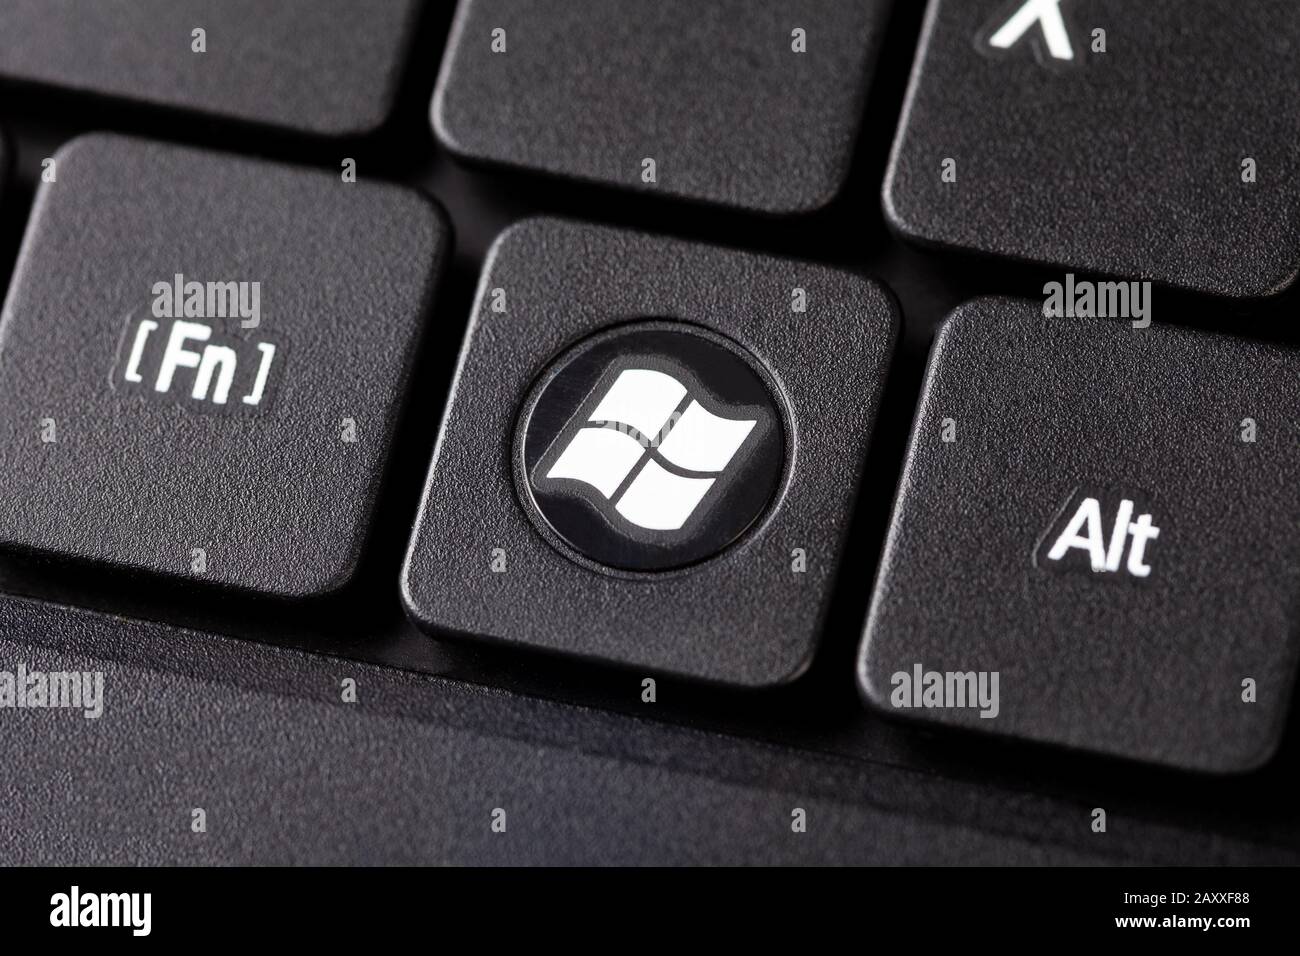 Le bouton Windows sur un ordinateur portable noir clavier macro extrême closeup vue de dessus rond dédié de système d'exploitation avec le logo Windows blanc Banque D'Images